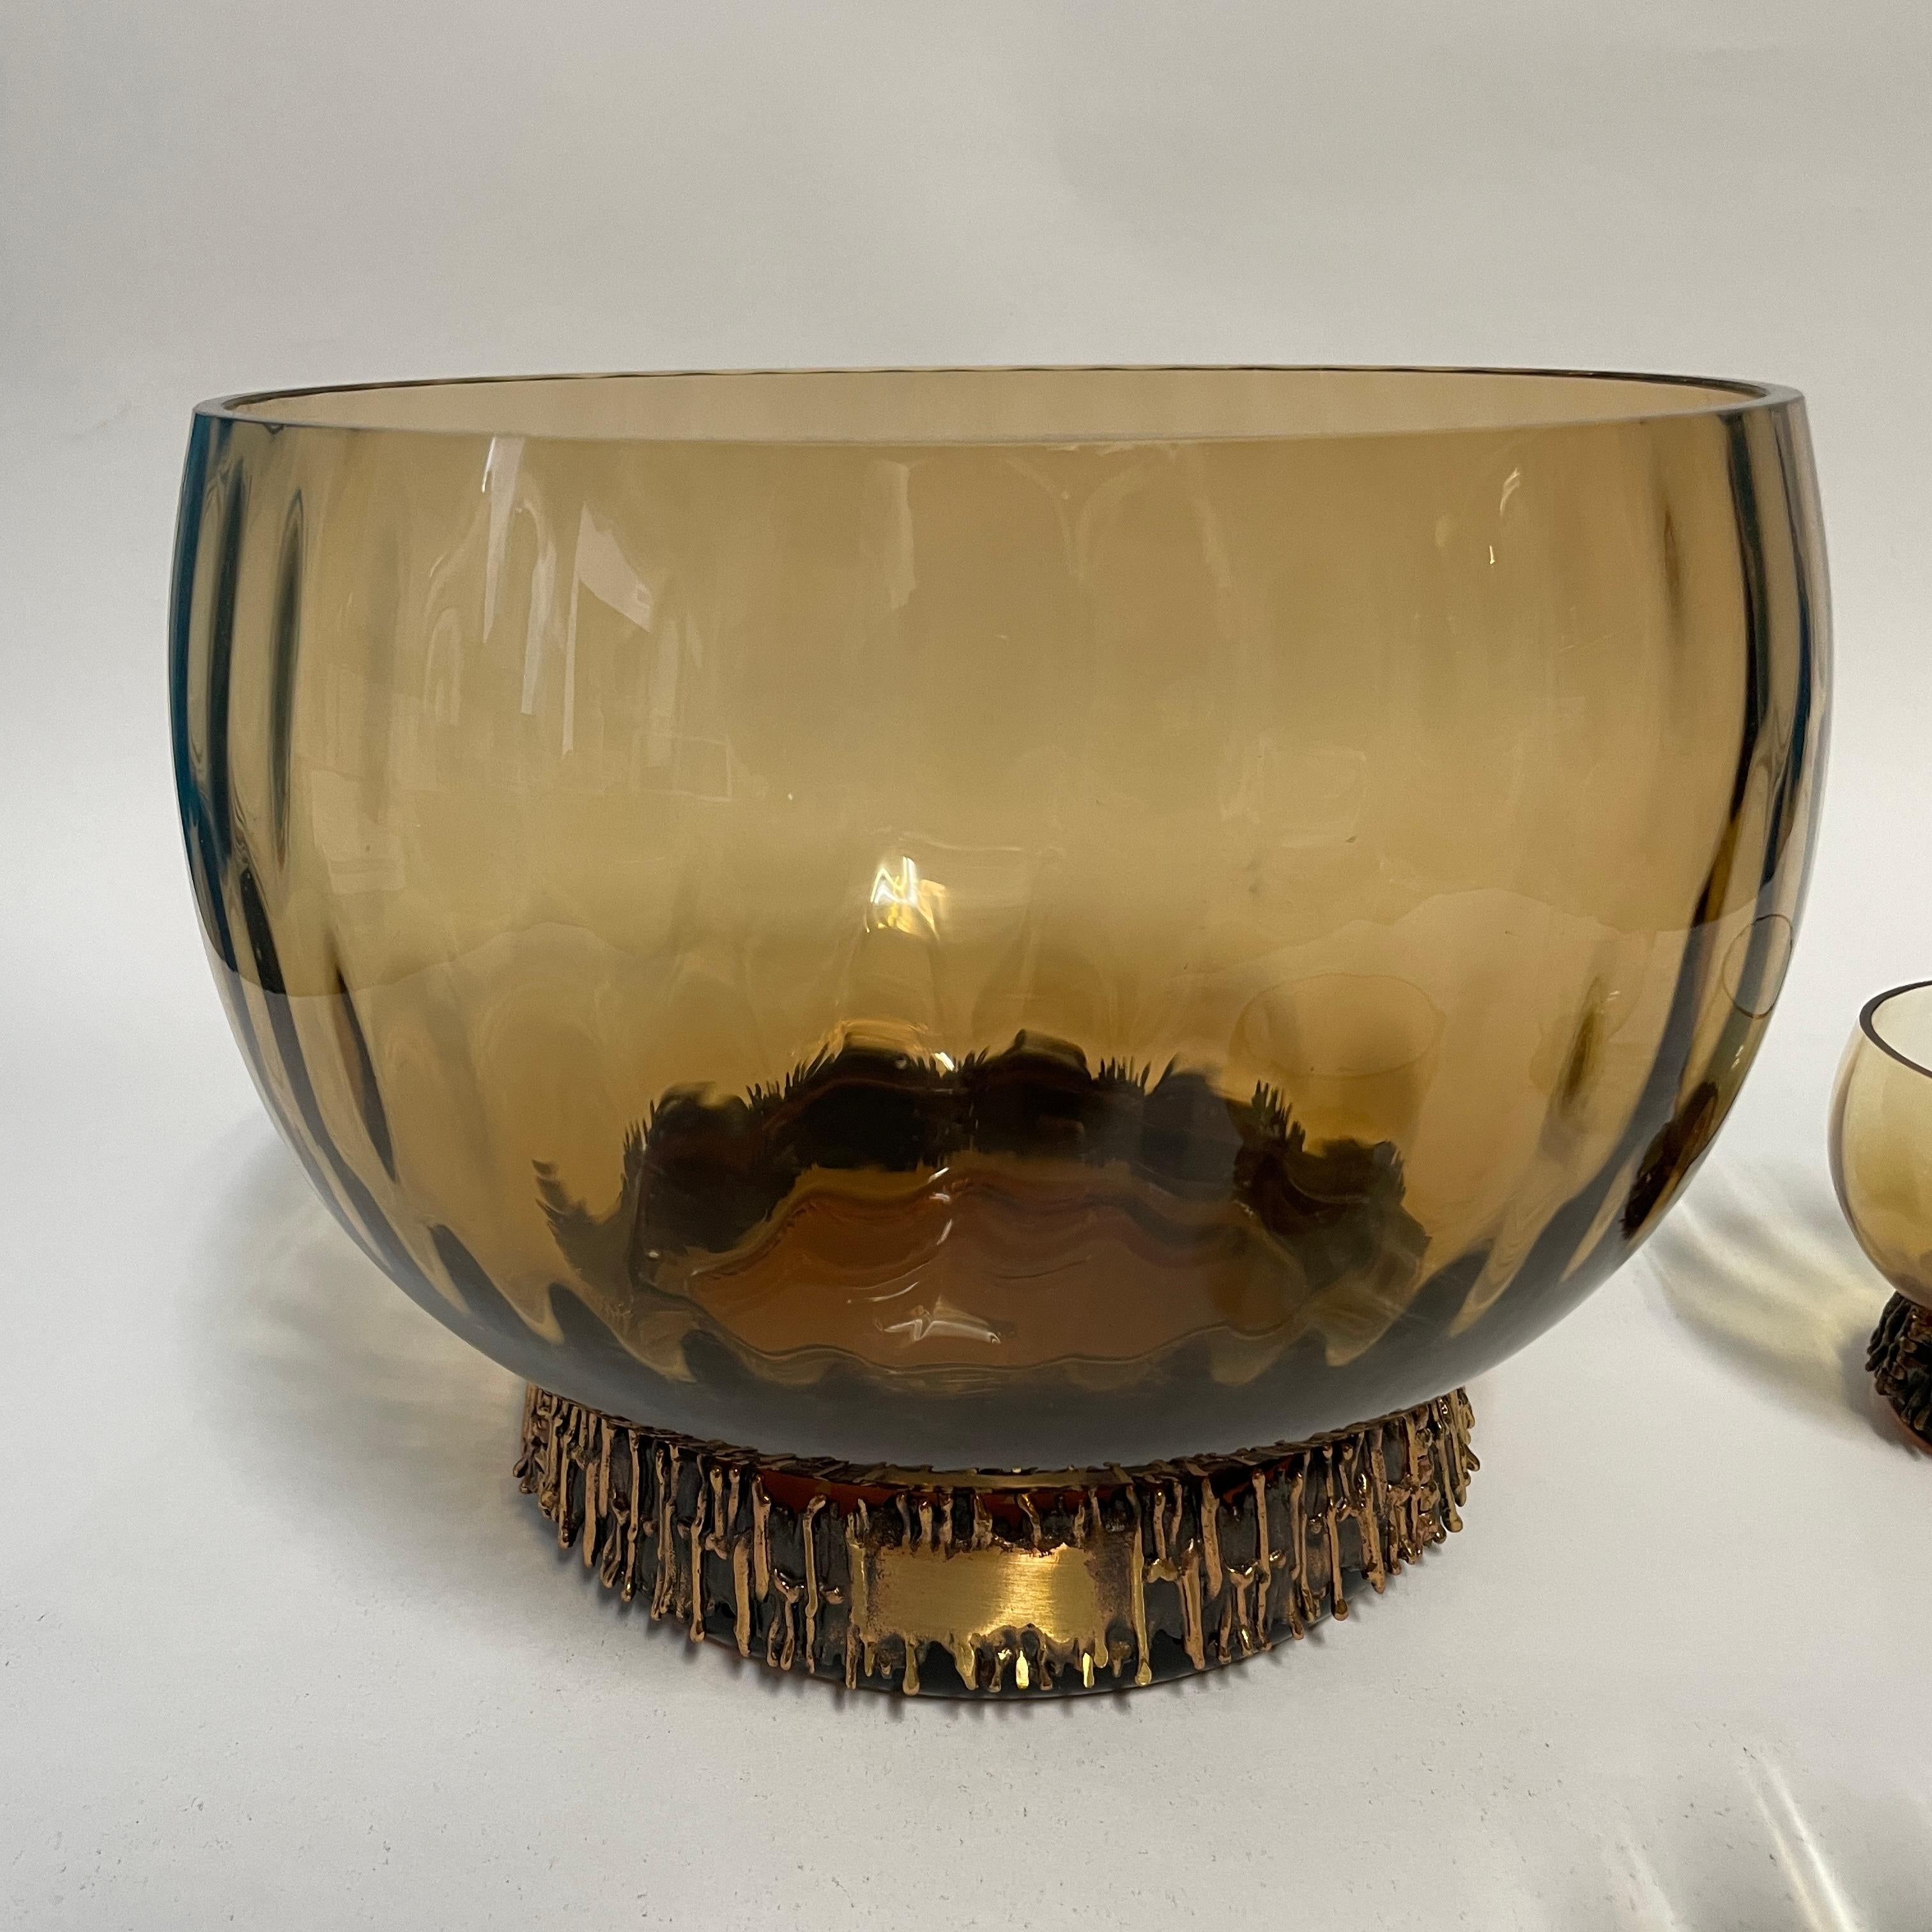 Le vase et les verres à punch Kaarna de Kumela ont été conçus par Pentti Sarpaneva et fabriqués dans les années 1960. S'élevant sur un cerceau de bronze, le verre impressionne par son magnifique design rond et organique. 
Les détails de l'arceau en